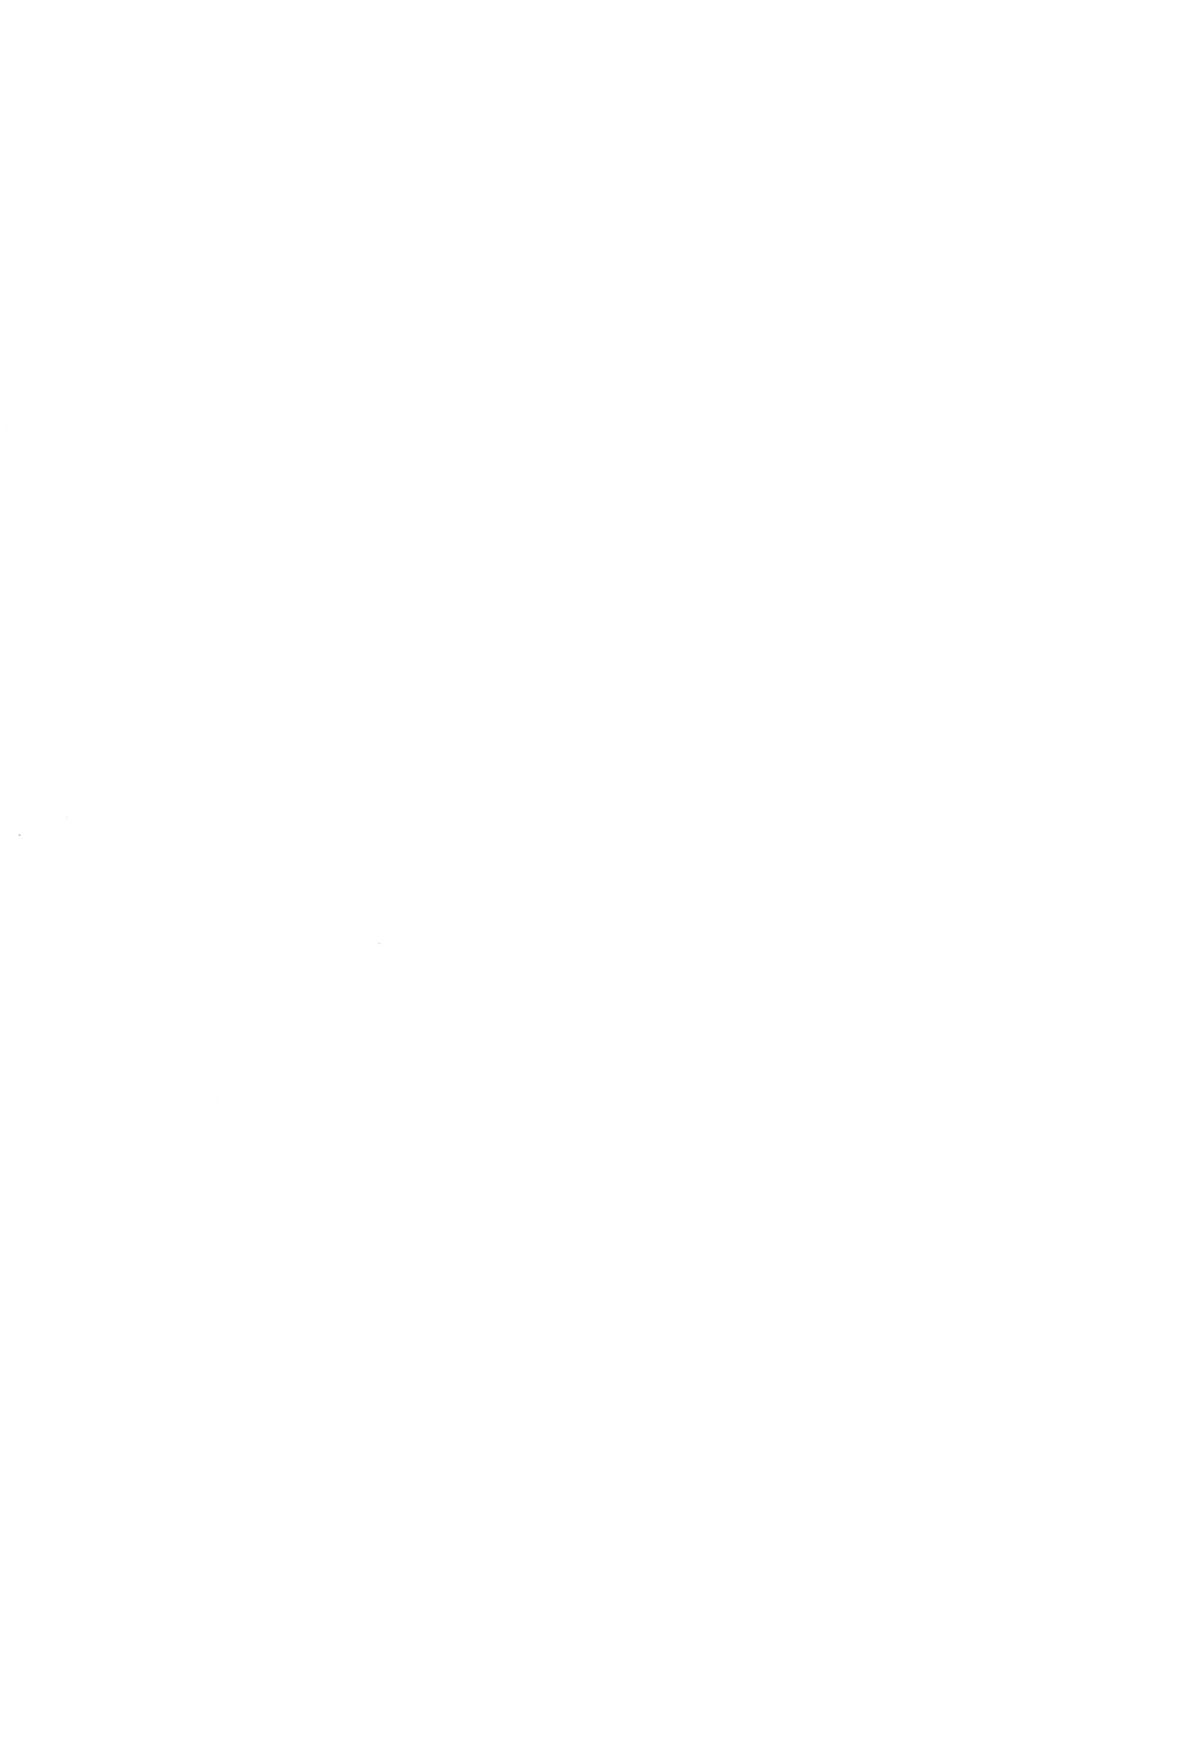 (コミティア124) [九十九里ニャ獣會 (不良品)] 小◯生ビッチは最高だぜ! 椎名音夢ちゃん家の食育事情編 (オリジナル) 2/32 